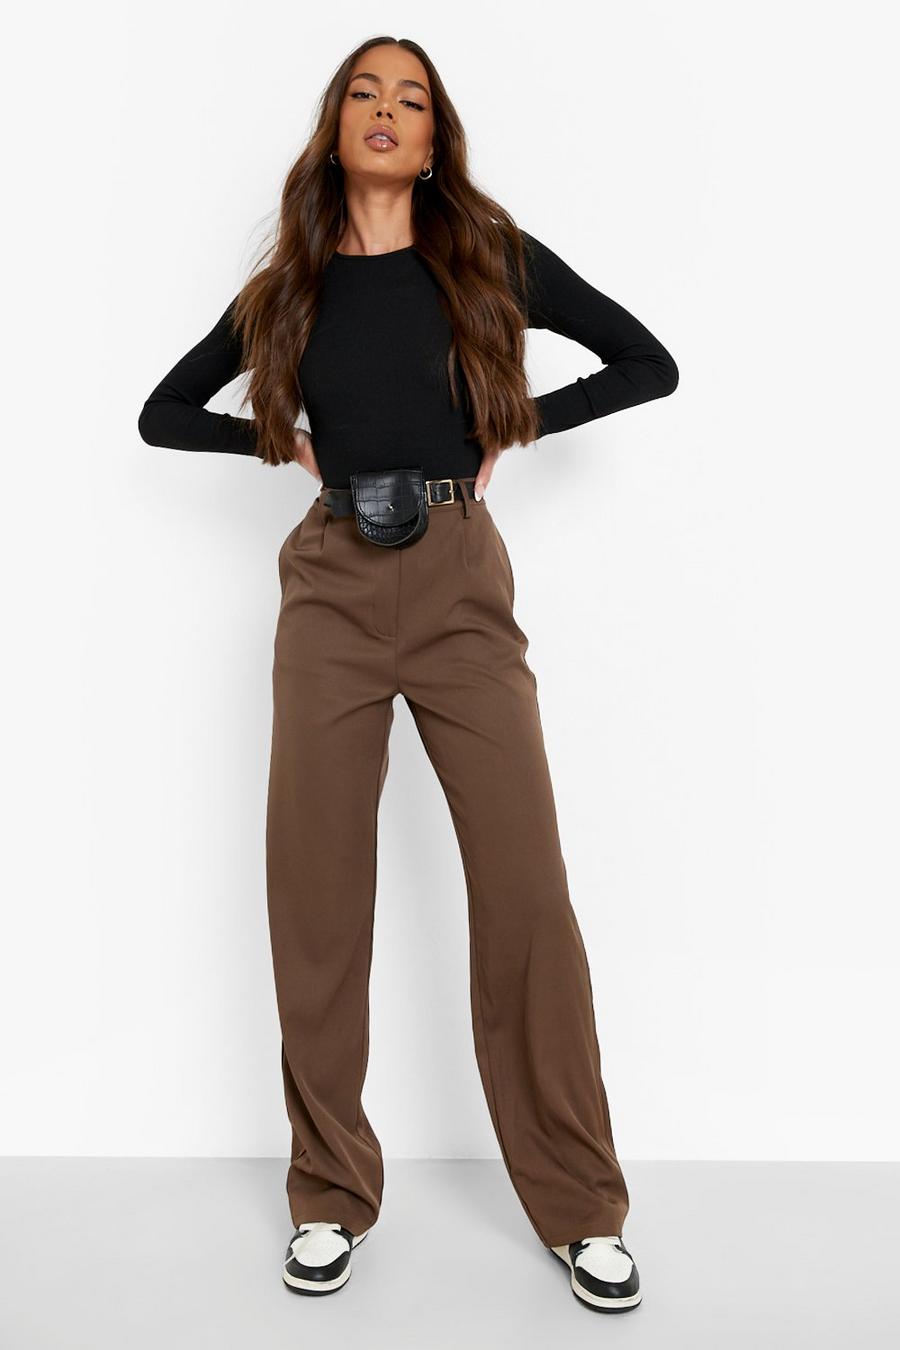 Tan brown Belt Bag Woven Casual Pants